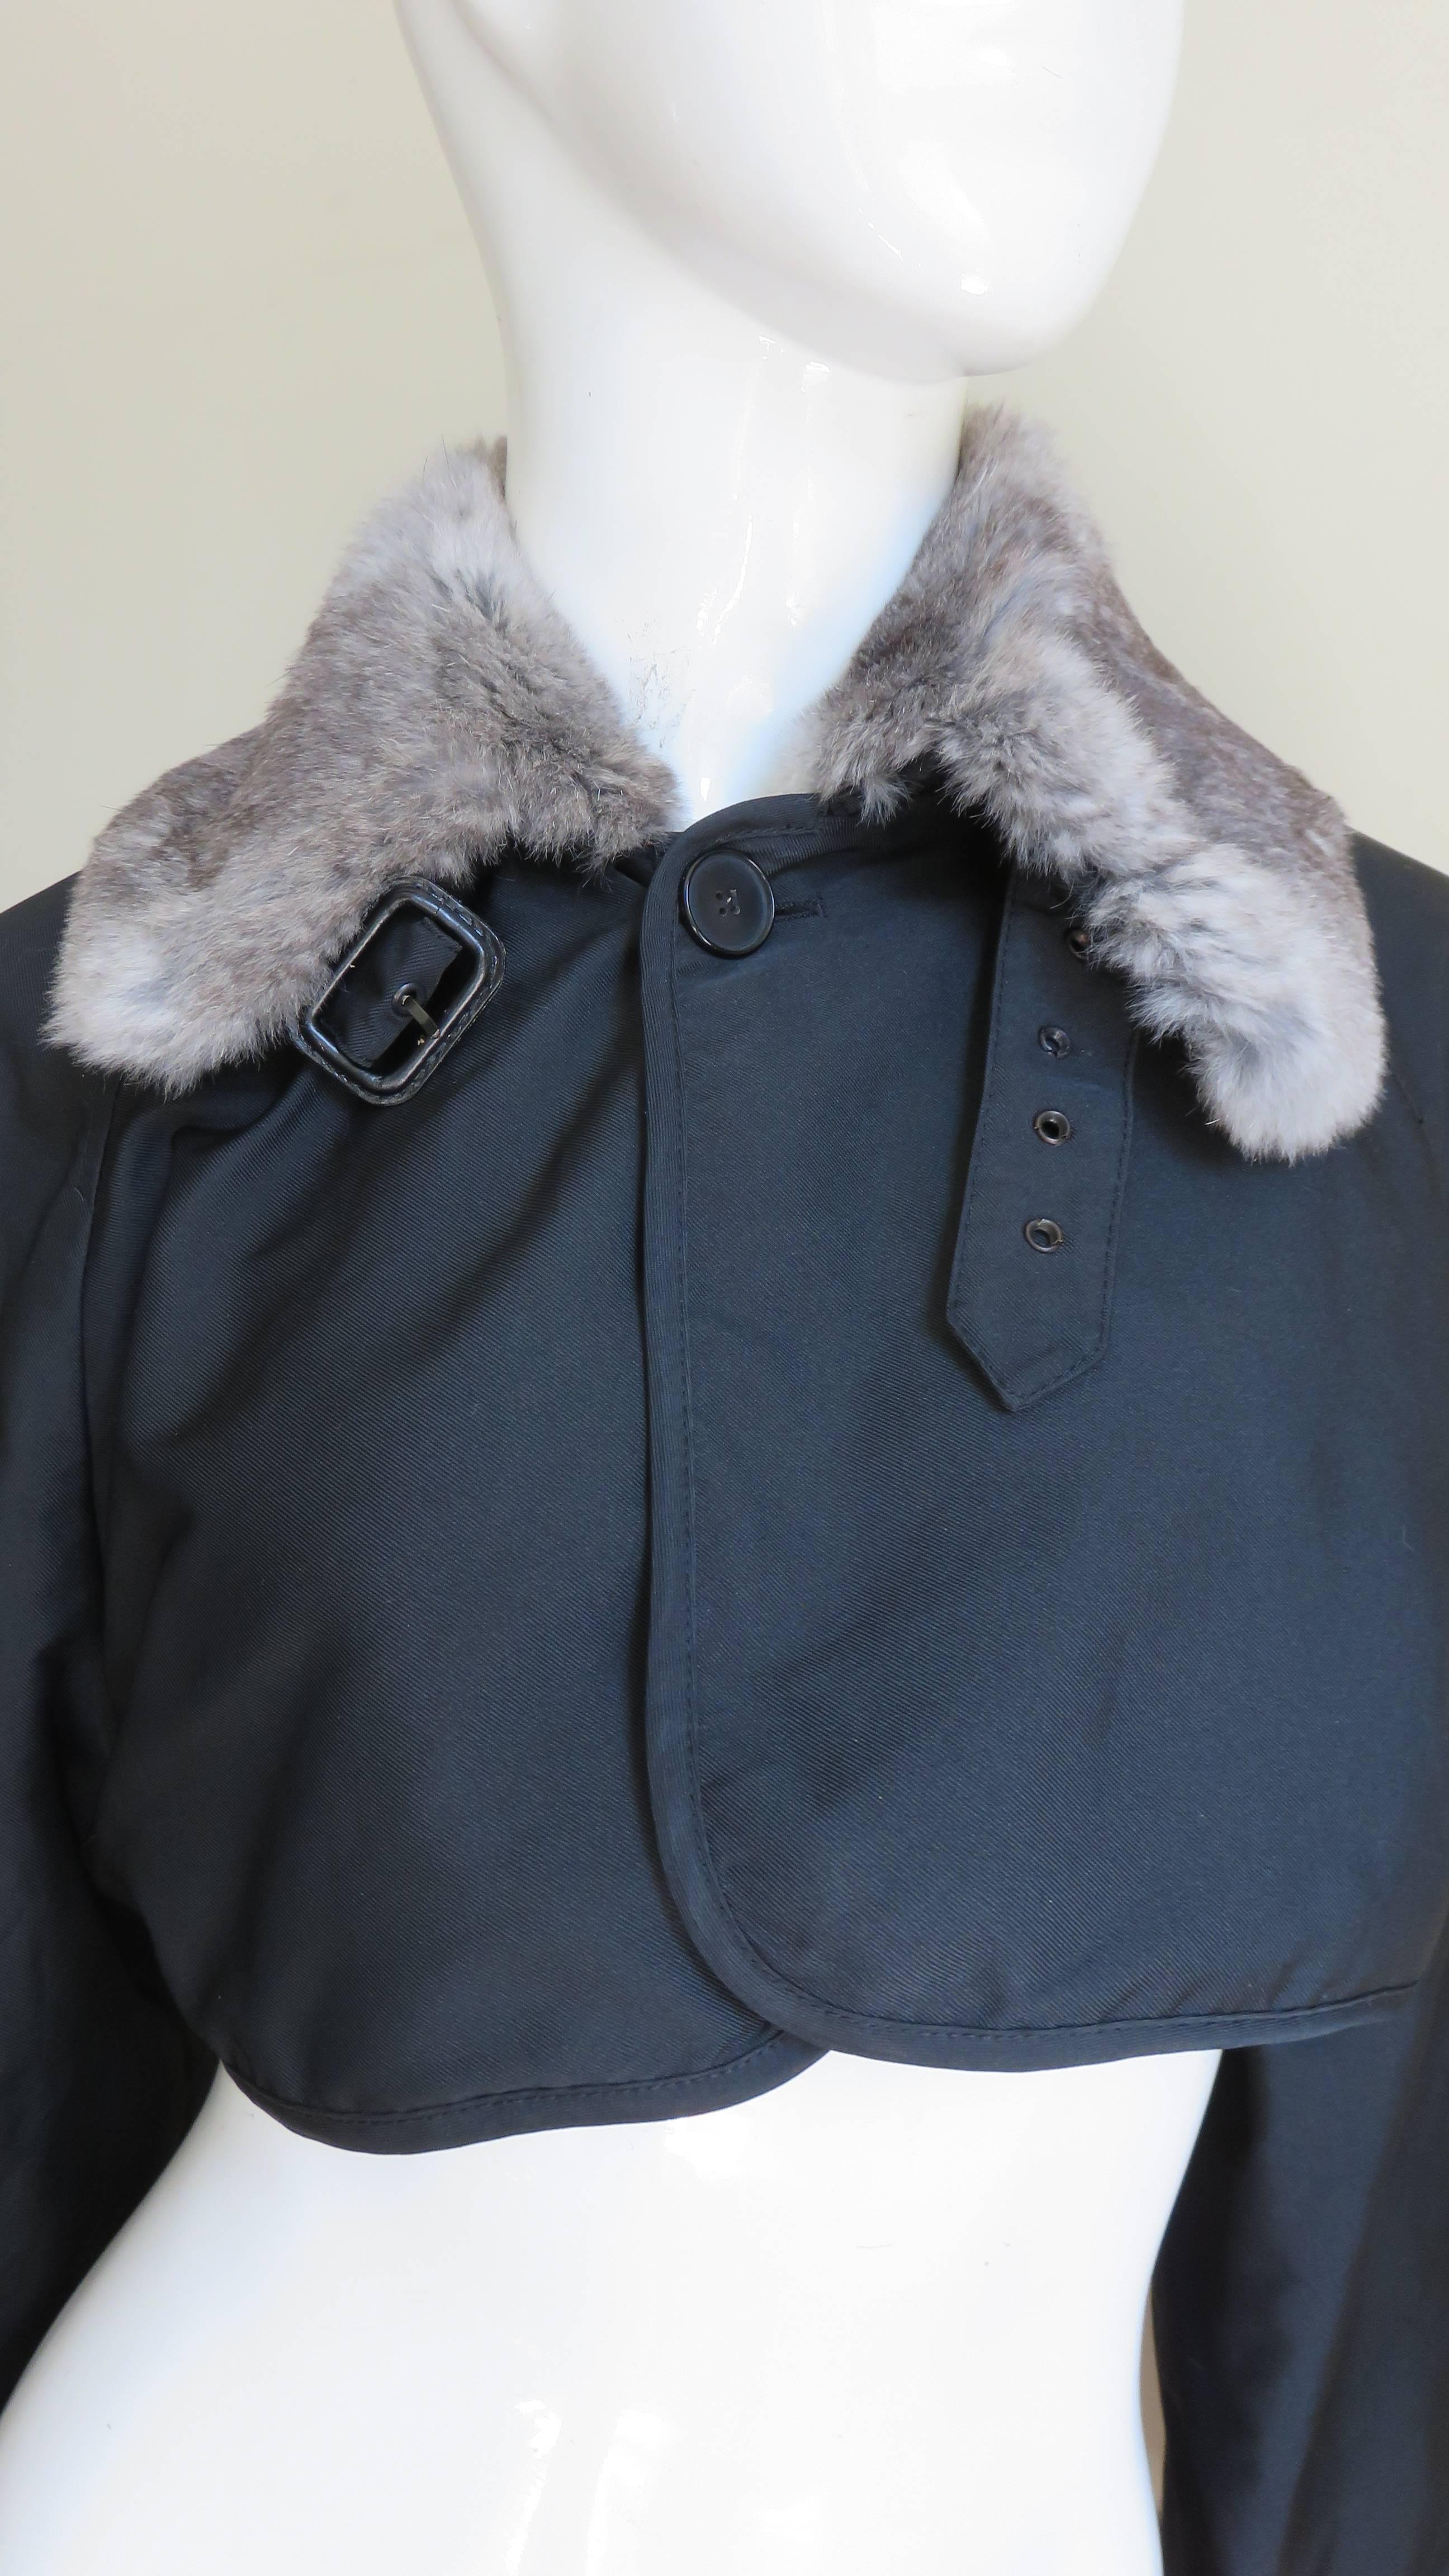 Une belle veste noire bordée de fourrure de Jean Paul Gaultier.  Il est coupé avec un col en fourrure douce dans des tons de gris et des manches raglan avec de larges poignets en fourrure assortis.  Le col est doté d'une fermeture à bouton sur le